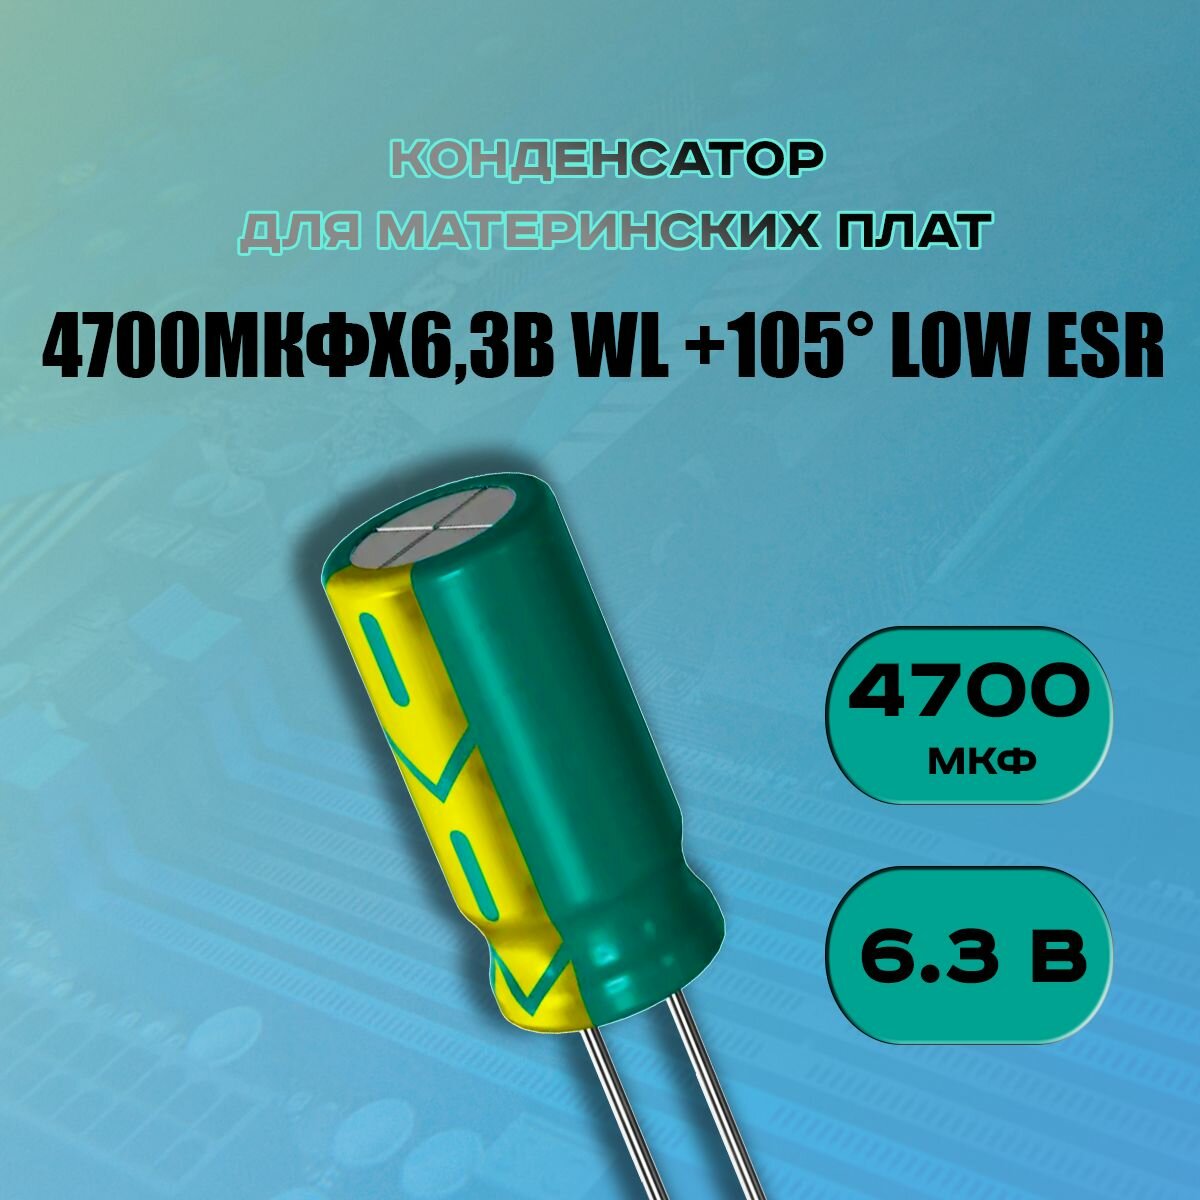 Конденсатор для материнской платы 4700 микрофарат 6.3 Вольт (4700uf 6.3V WL +105 LOW ESR) - 1 шт.